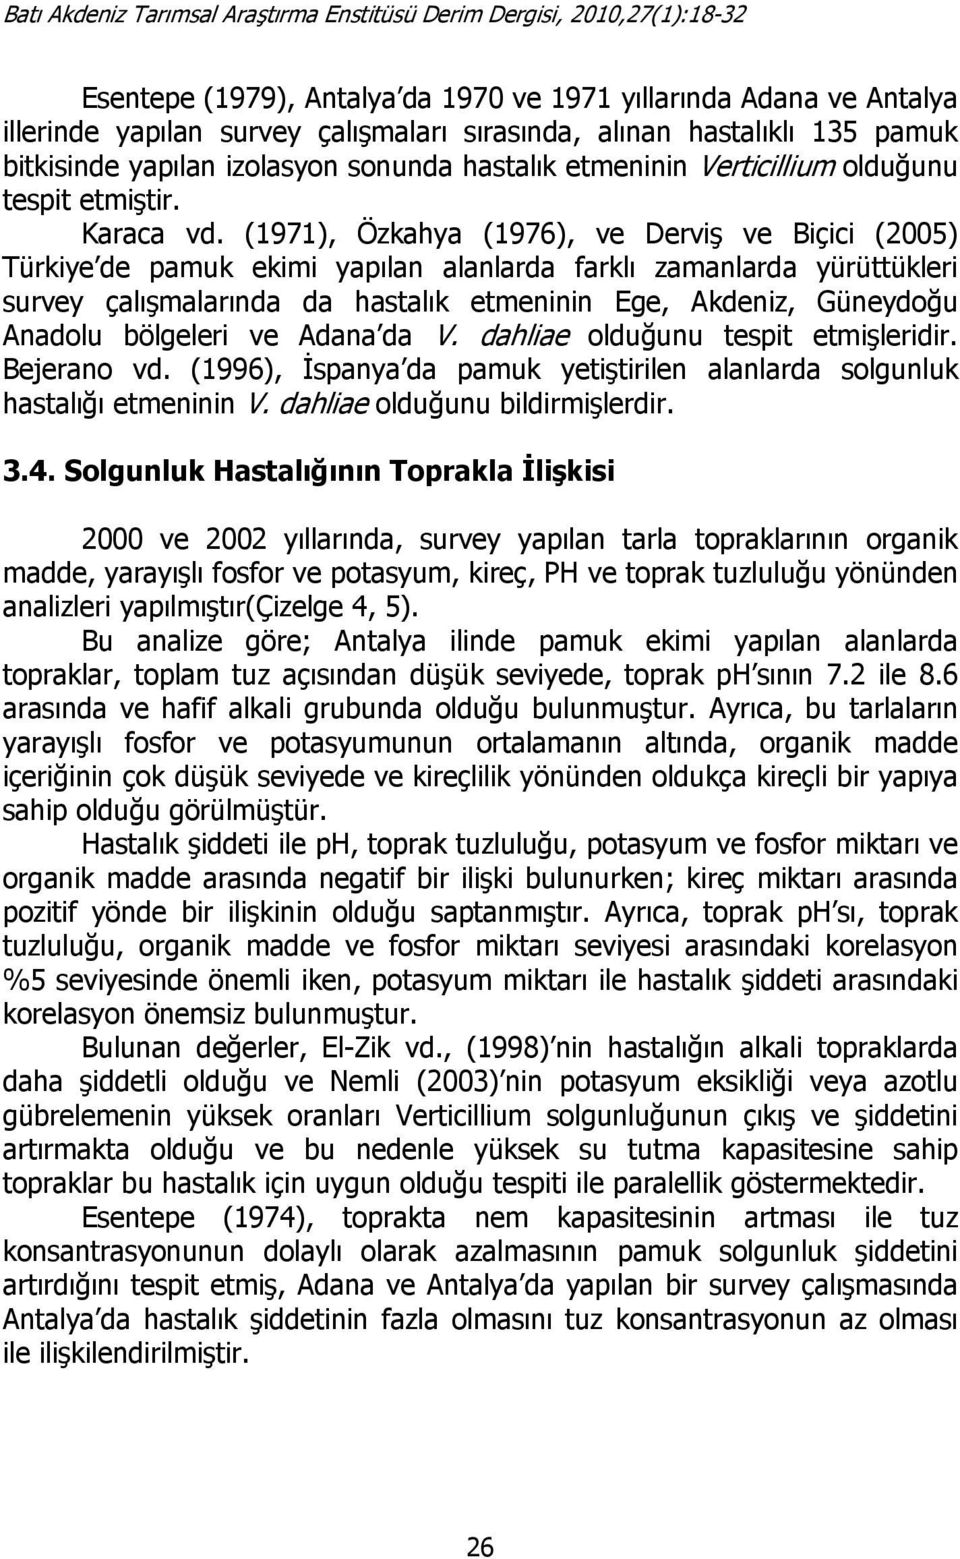 (1971), Özkahya (1976), ve Derviş ve Biçici (2005) Türkiye de pamuk ekimi yapılan alanlarda farklı zamanlarda yürüttükleri survey çalışmalarında da hastalık etmeninin Ege, Akdeniz, Güneydoğu Anadolu